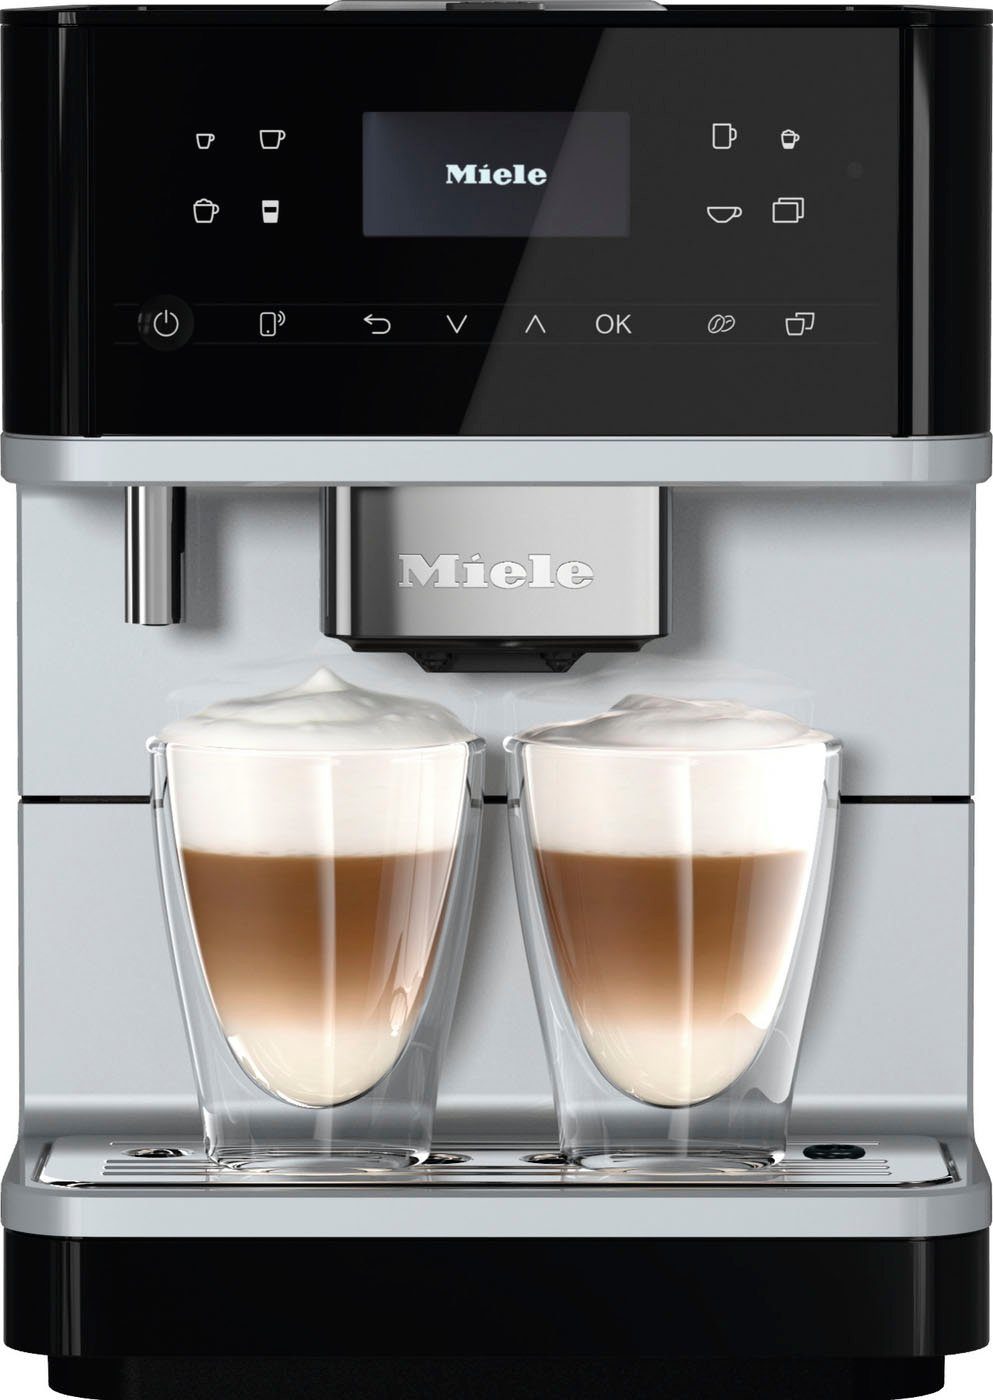 CM Kaffeekannenfunktion Genießerprofile, 4 Kaffeevollautomat 6160, Miele